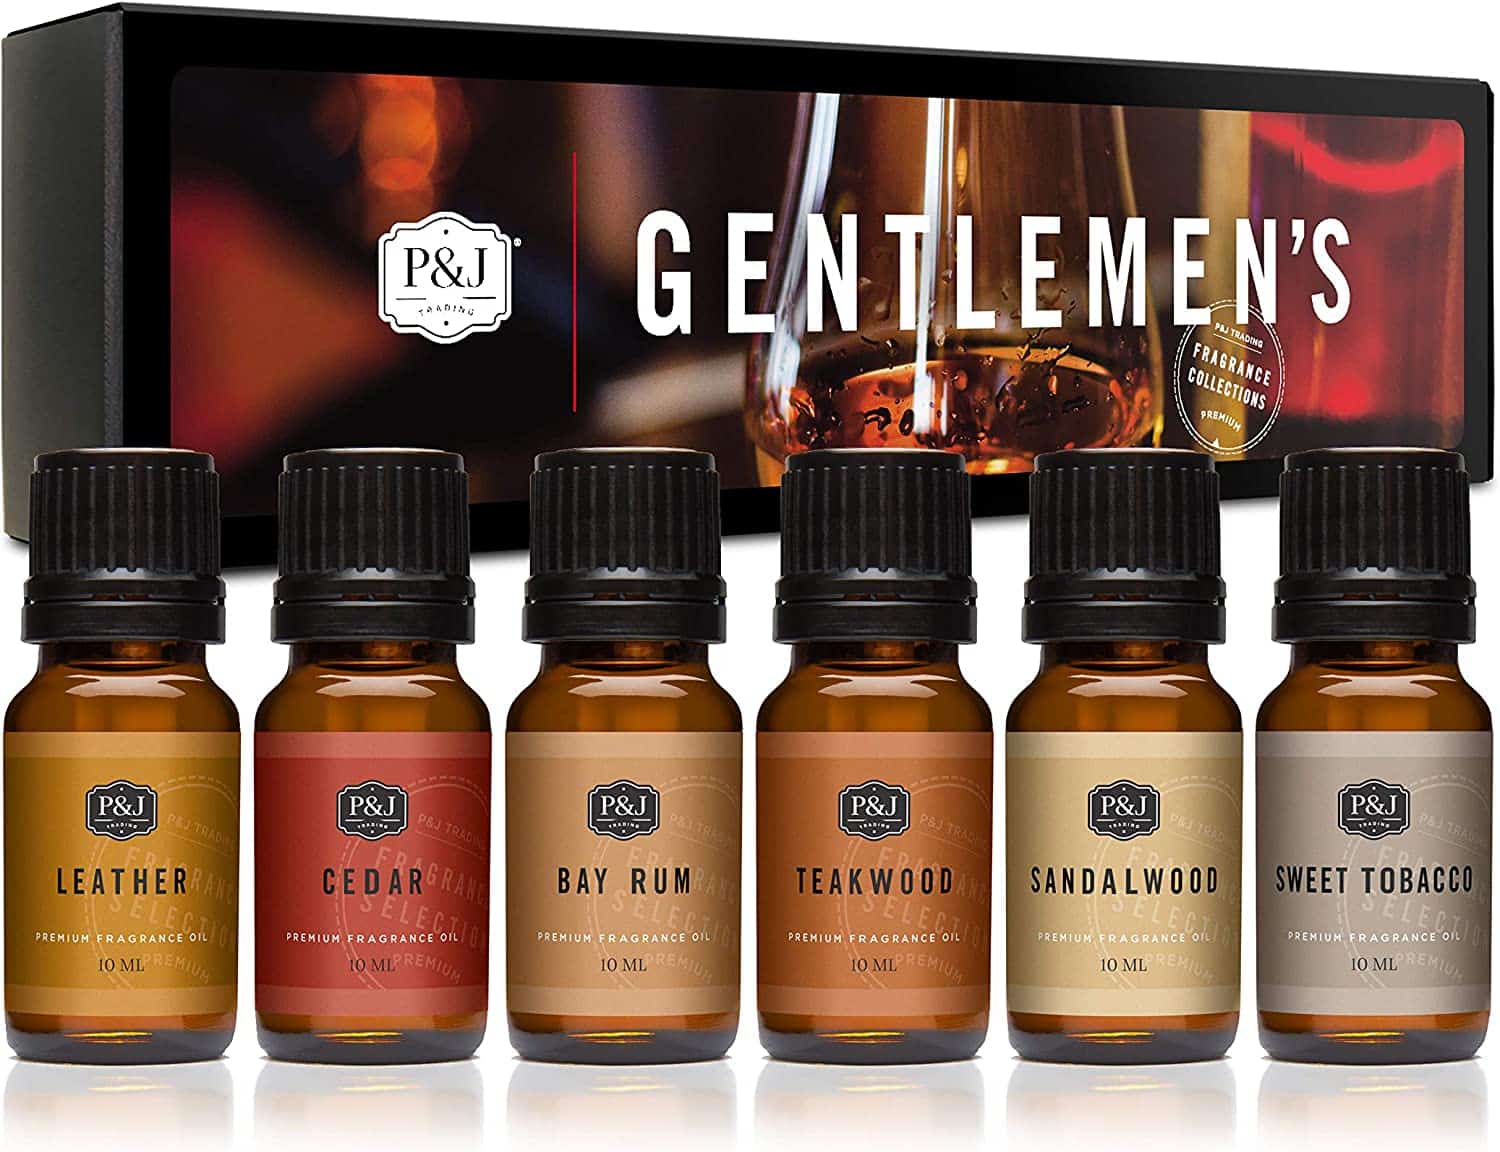 Gentlemen's Set of 6 from the brand P&J